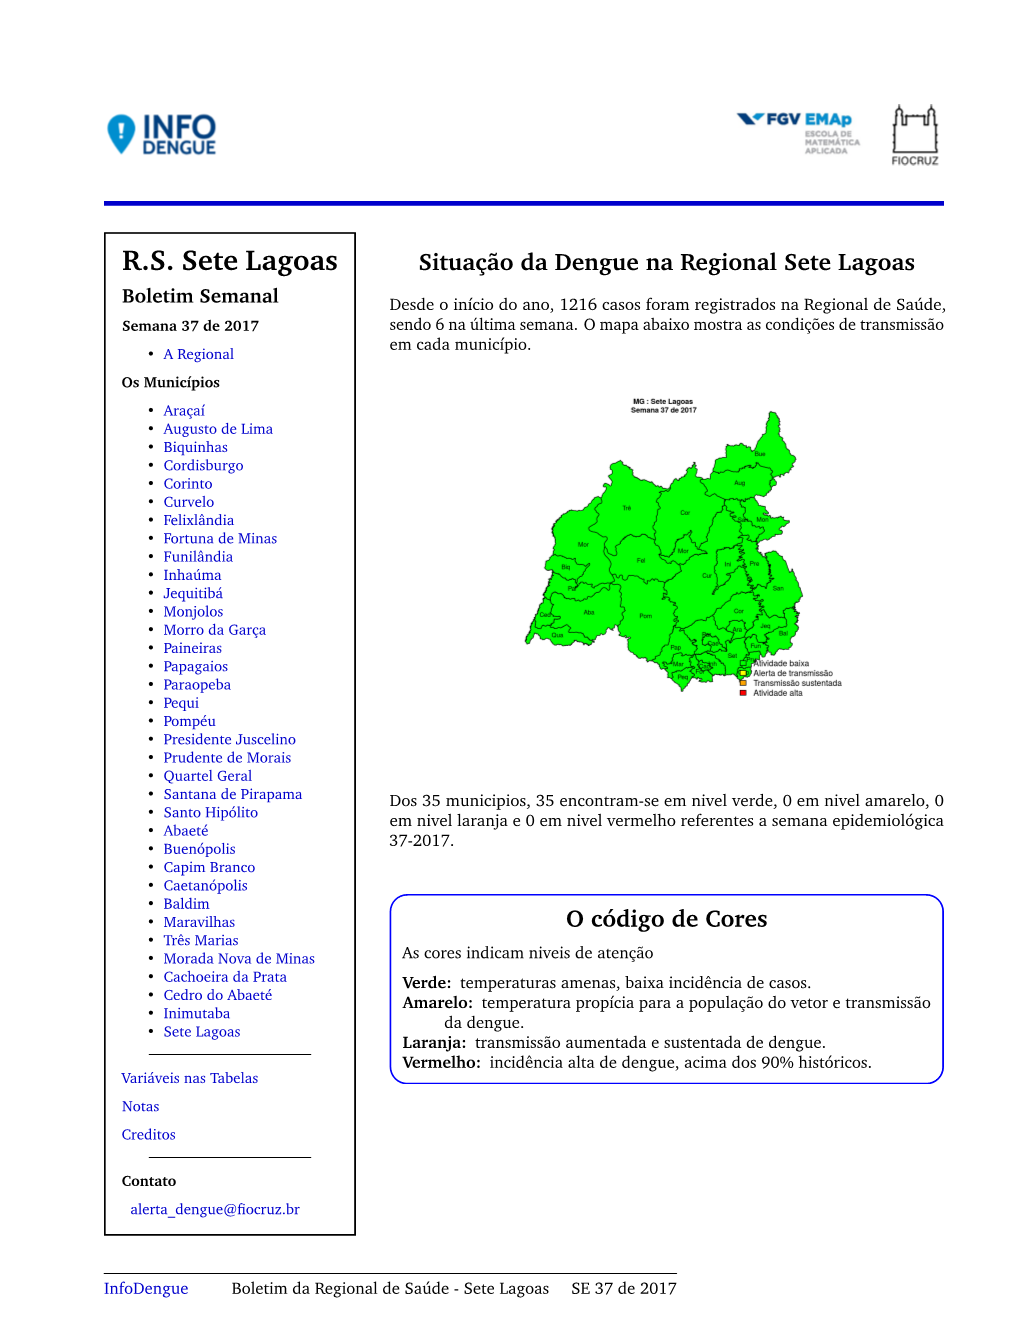 R.S. Sete Lagoas Situação Da Dengue Na Regional Sete Lagoas